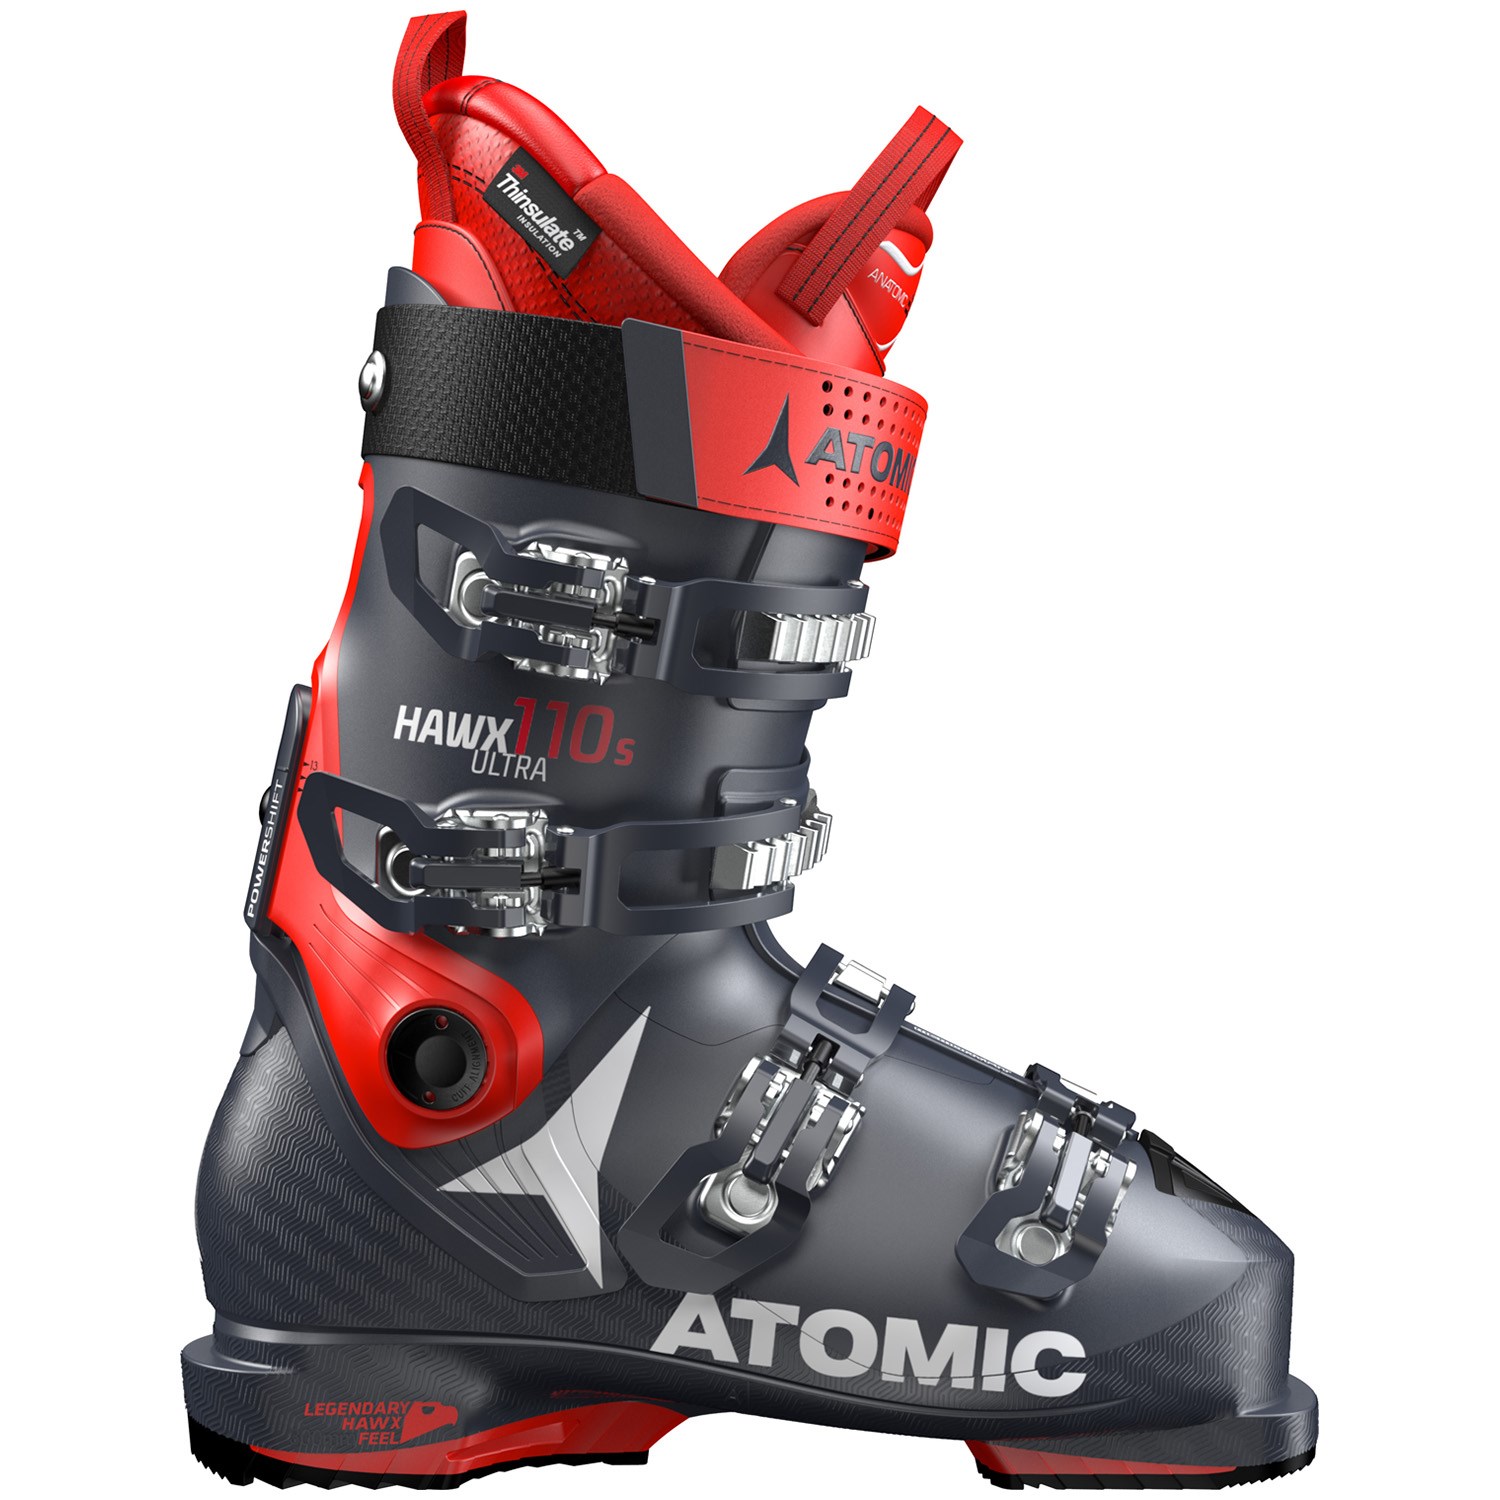 Atomic Hawx Ultra 110 Men's Ski Boots Ski Boots Ski Boots Ski Boots Shoes 